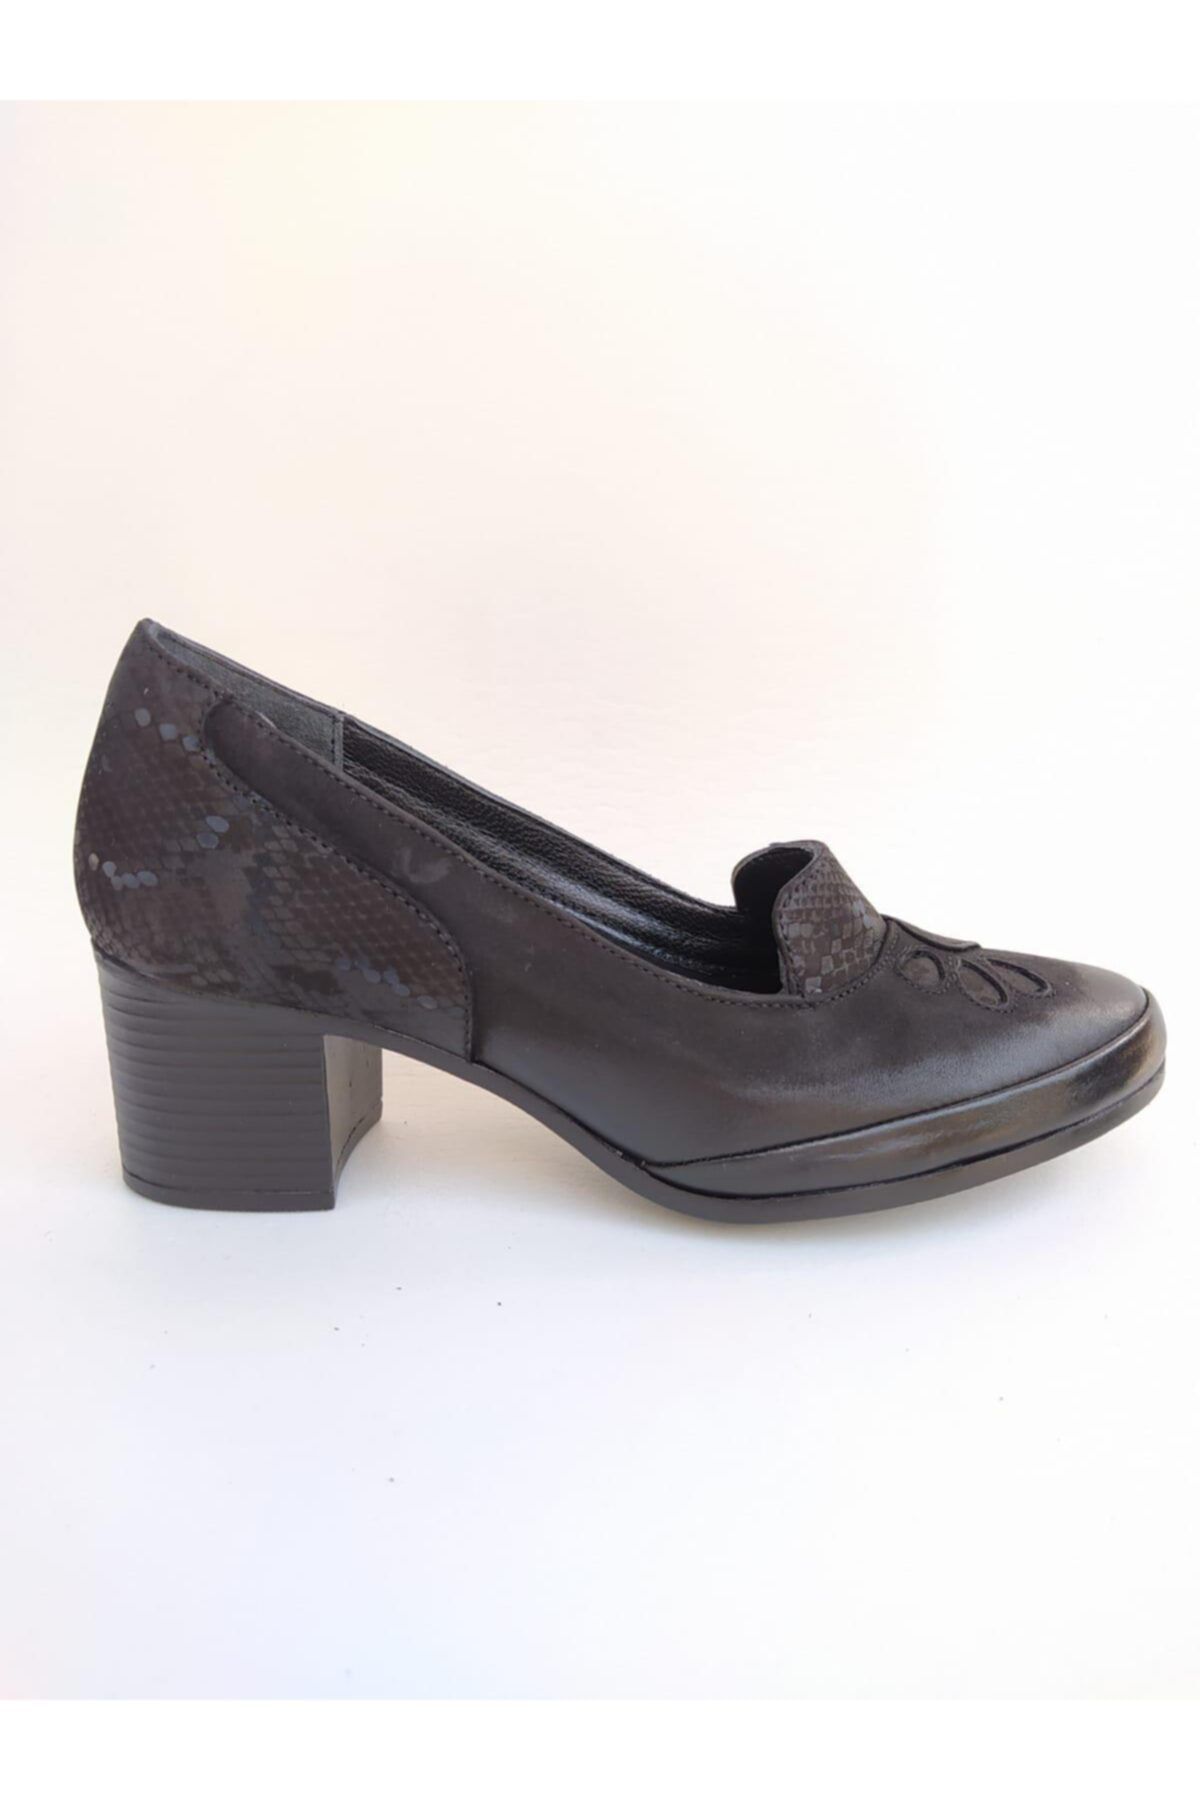 Venüs Kadın Kahverengi Hakiki Deri Topuklu Ayakkabı 1911922k